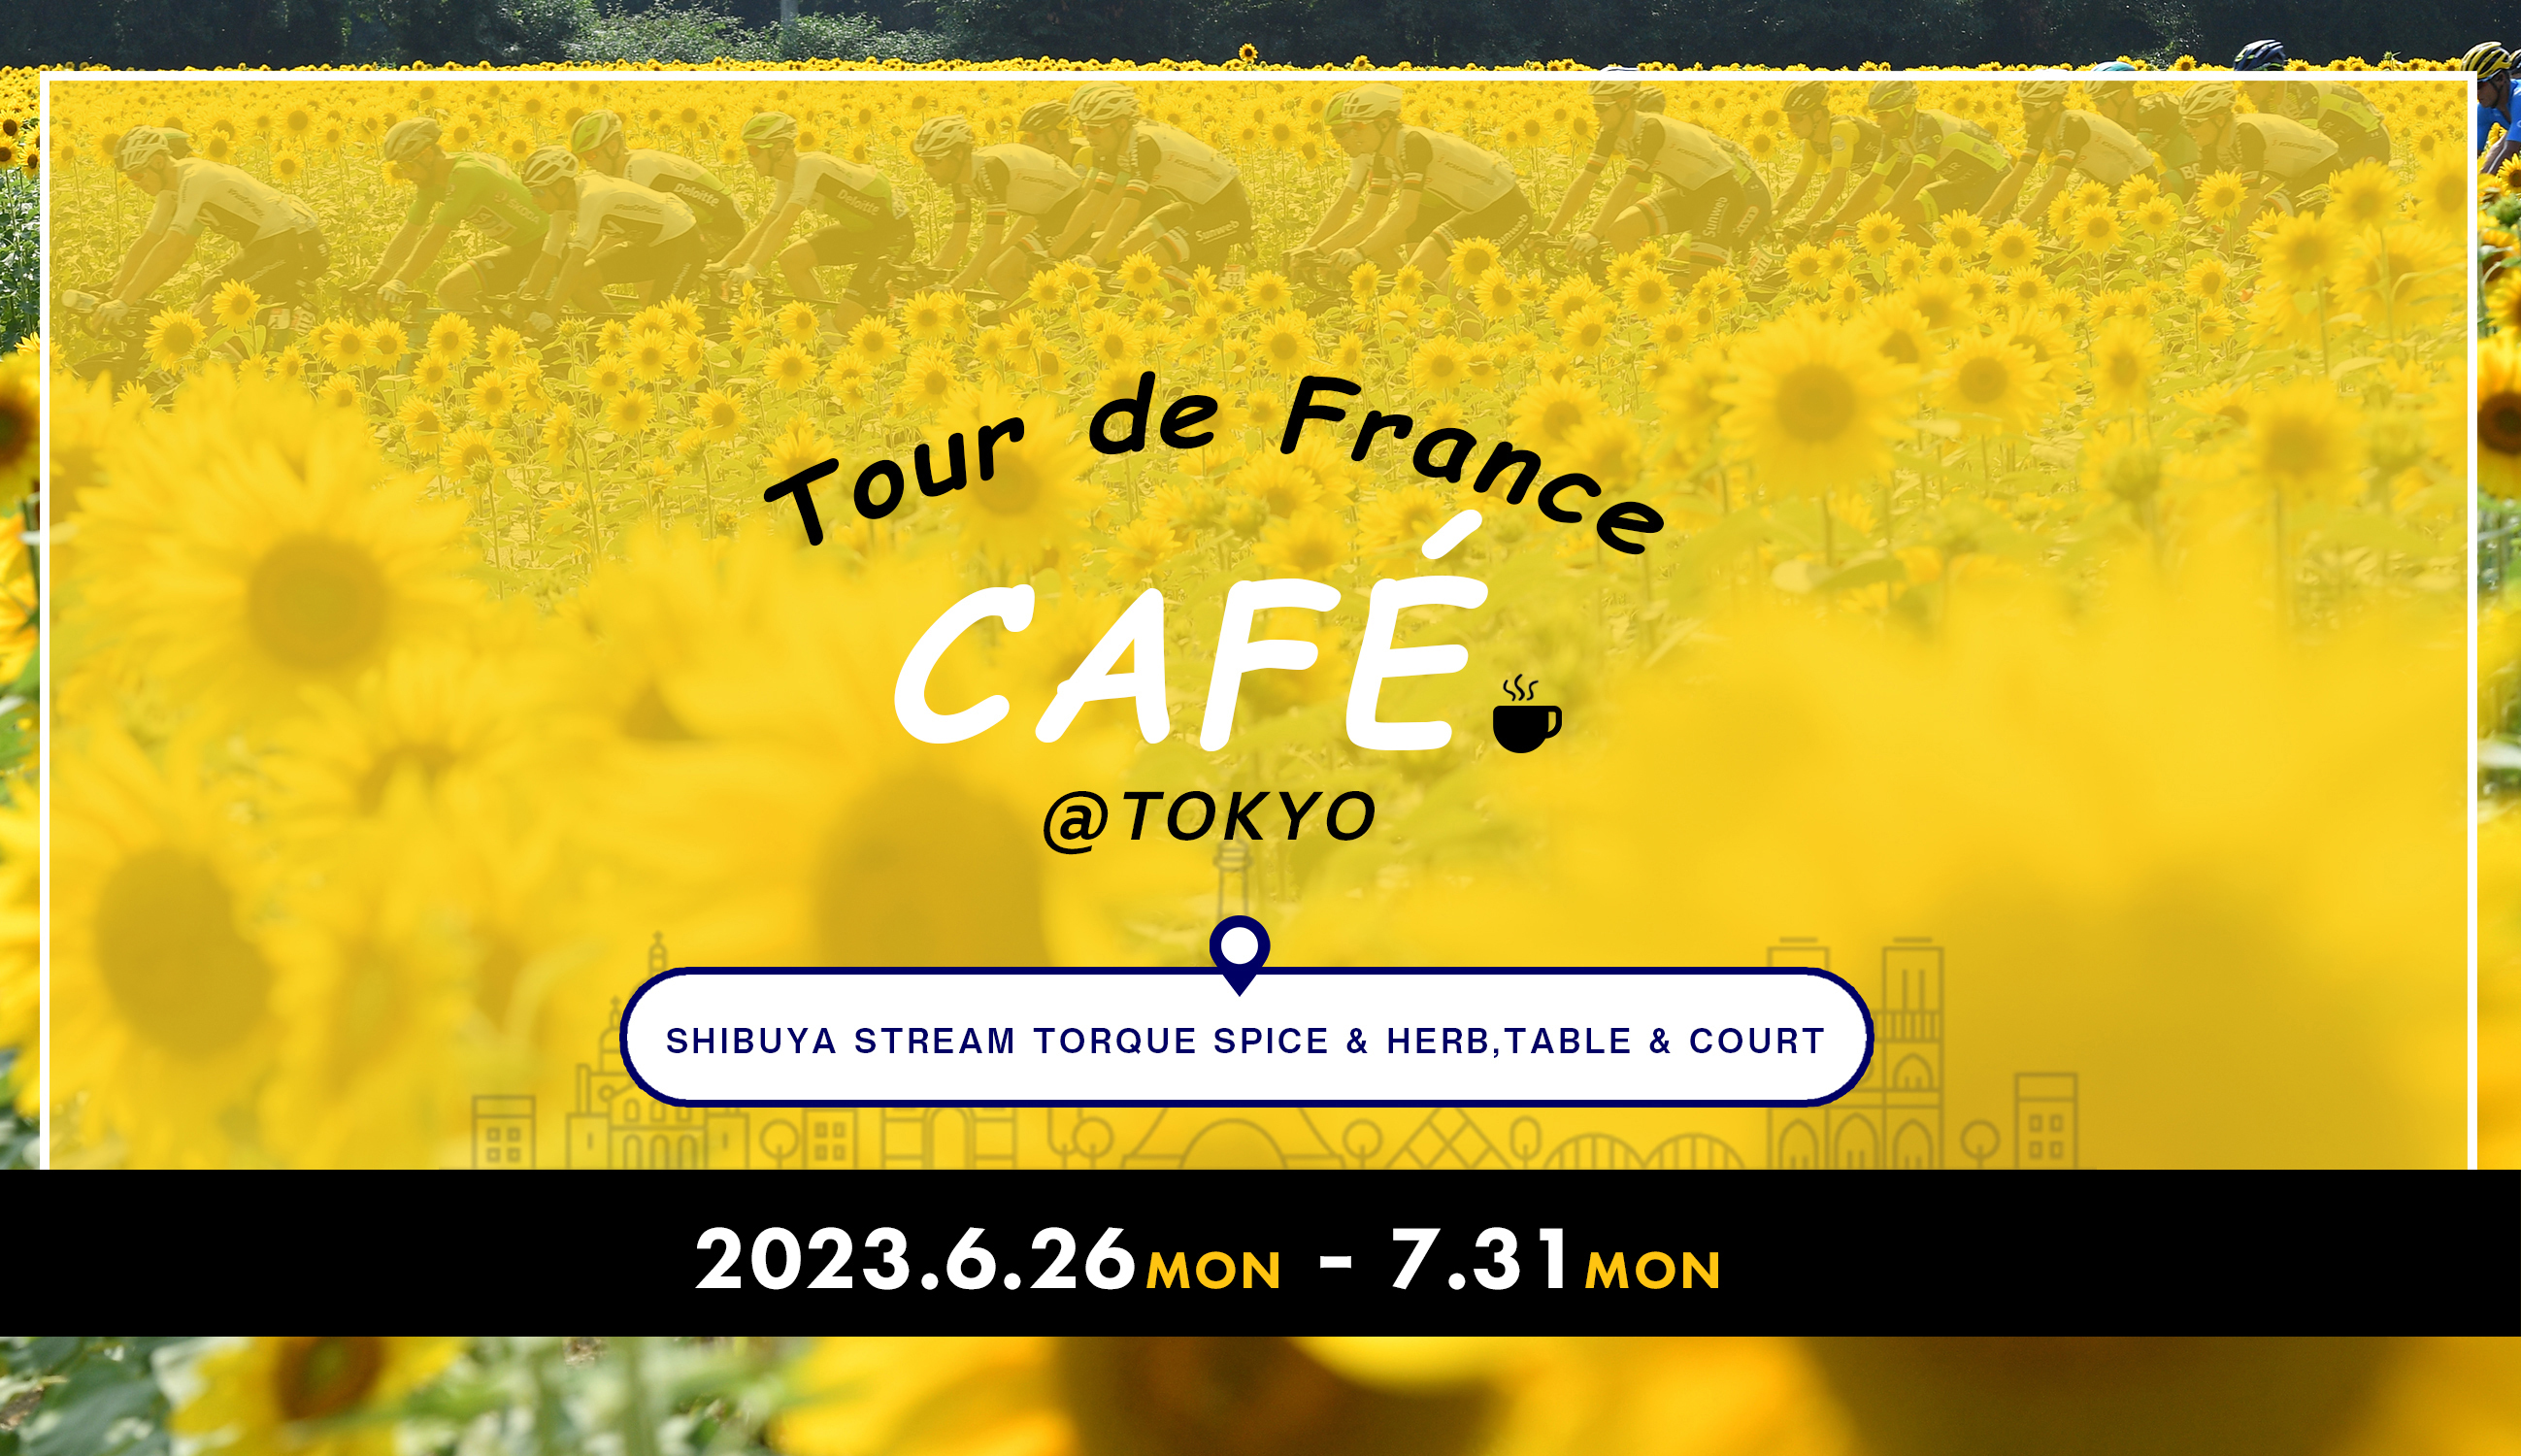 Tour de France CAFÉ＠TOKYO